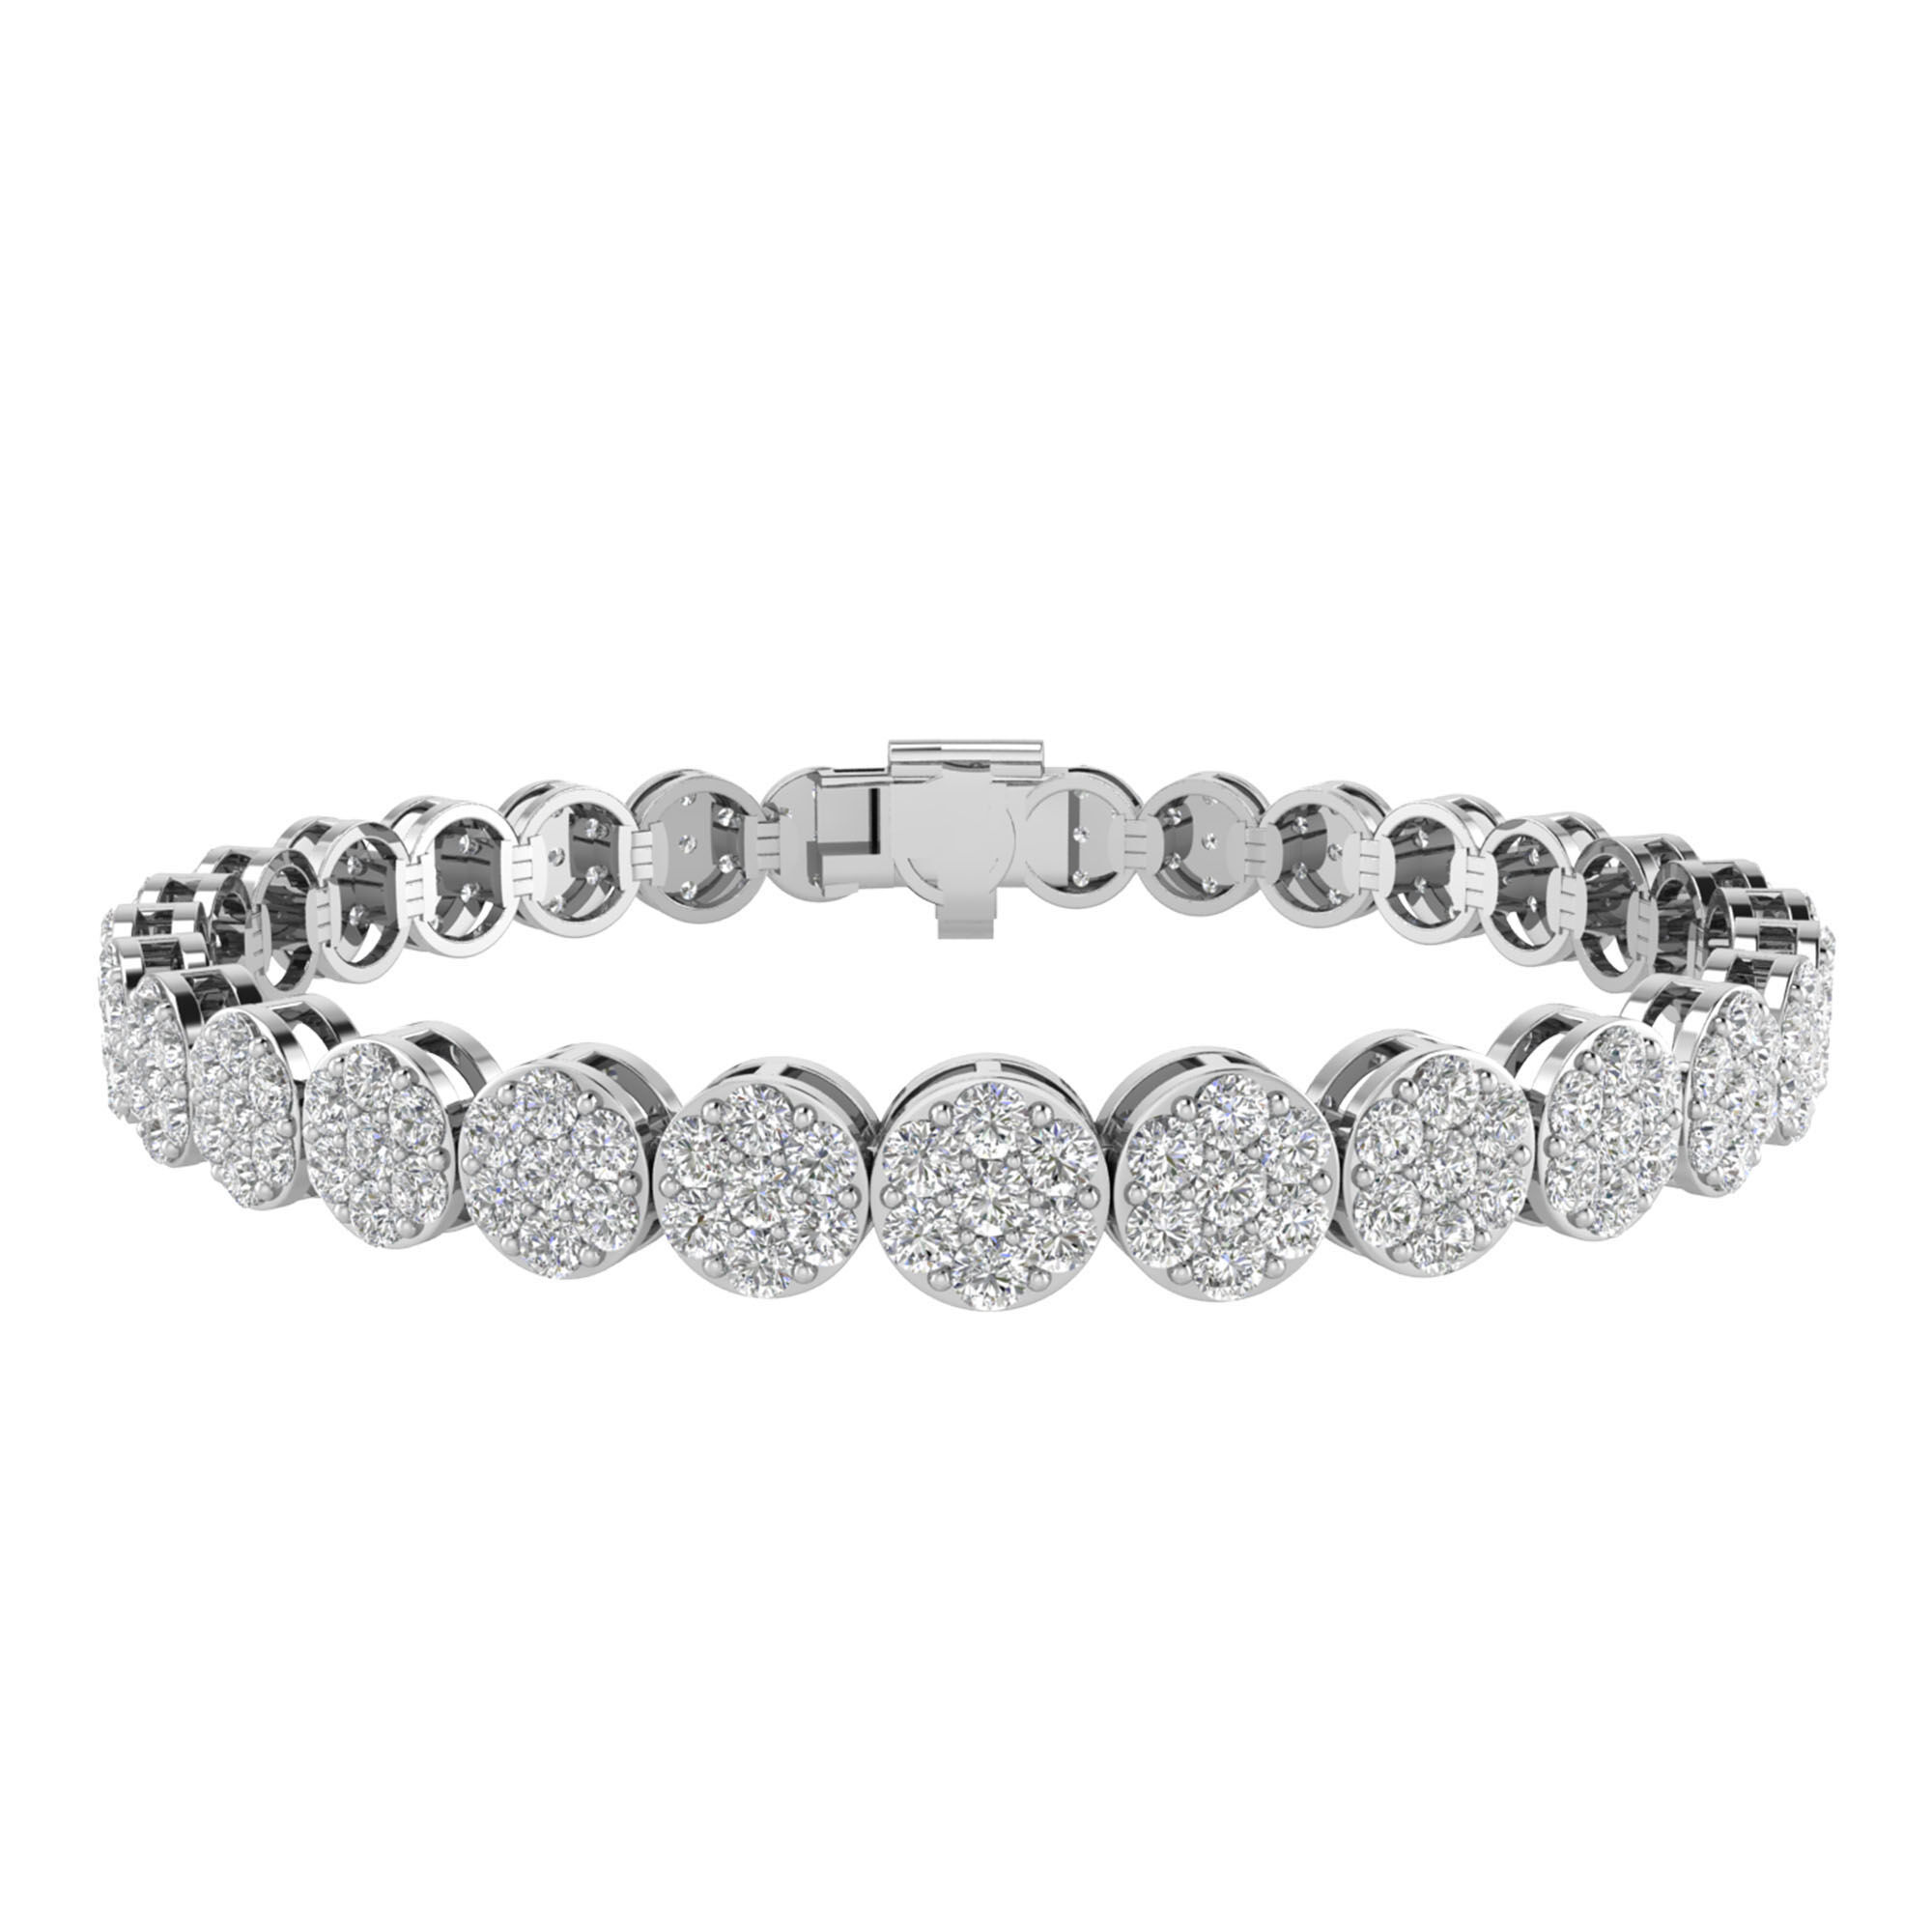 Buy Cluster Bracelet in 14k Gold / Diamond Cluster Bracelet / Unique Diamond  Layering Bracelet / Dainty Diamond Bracelet / Gift for Her Online in India  - Etsy